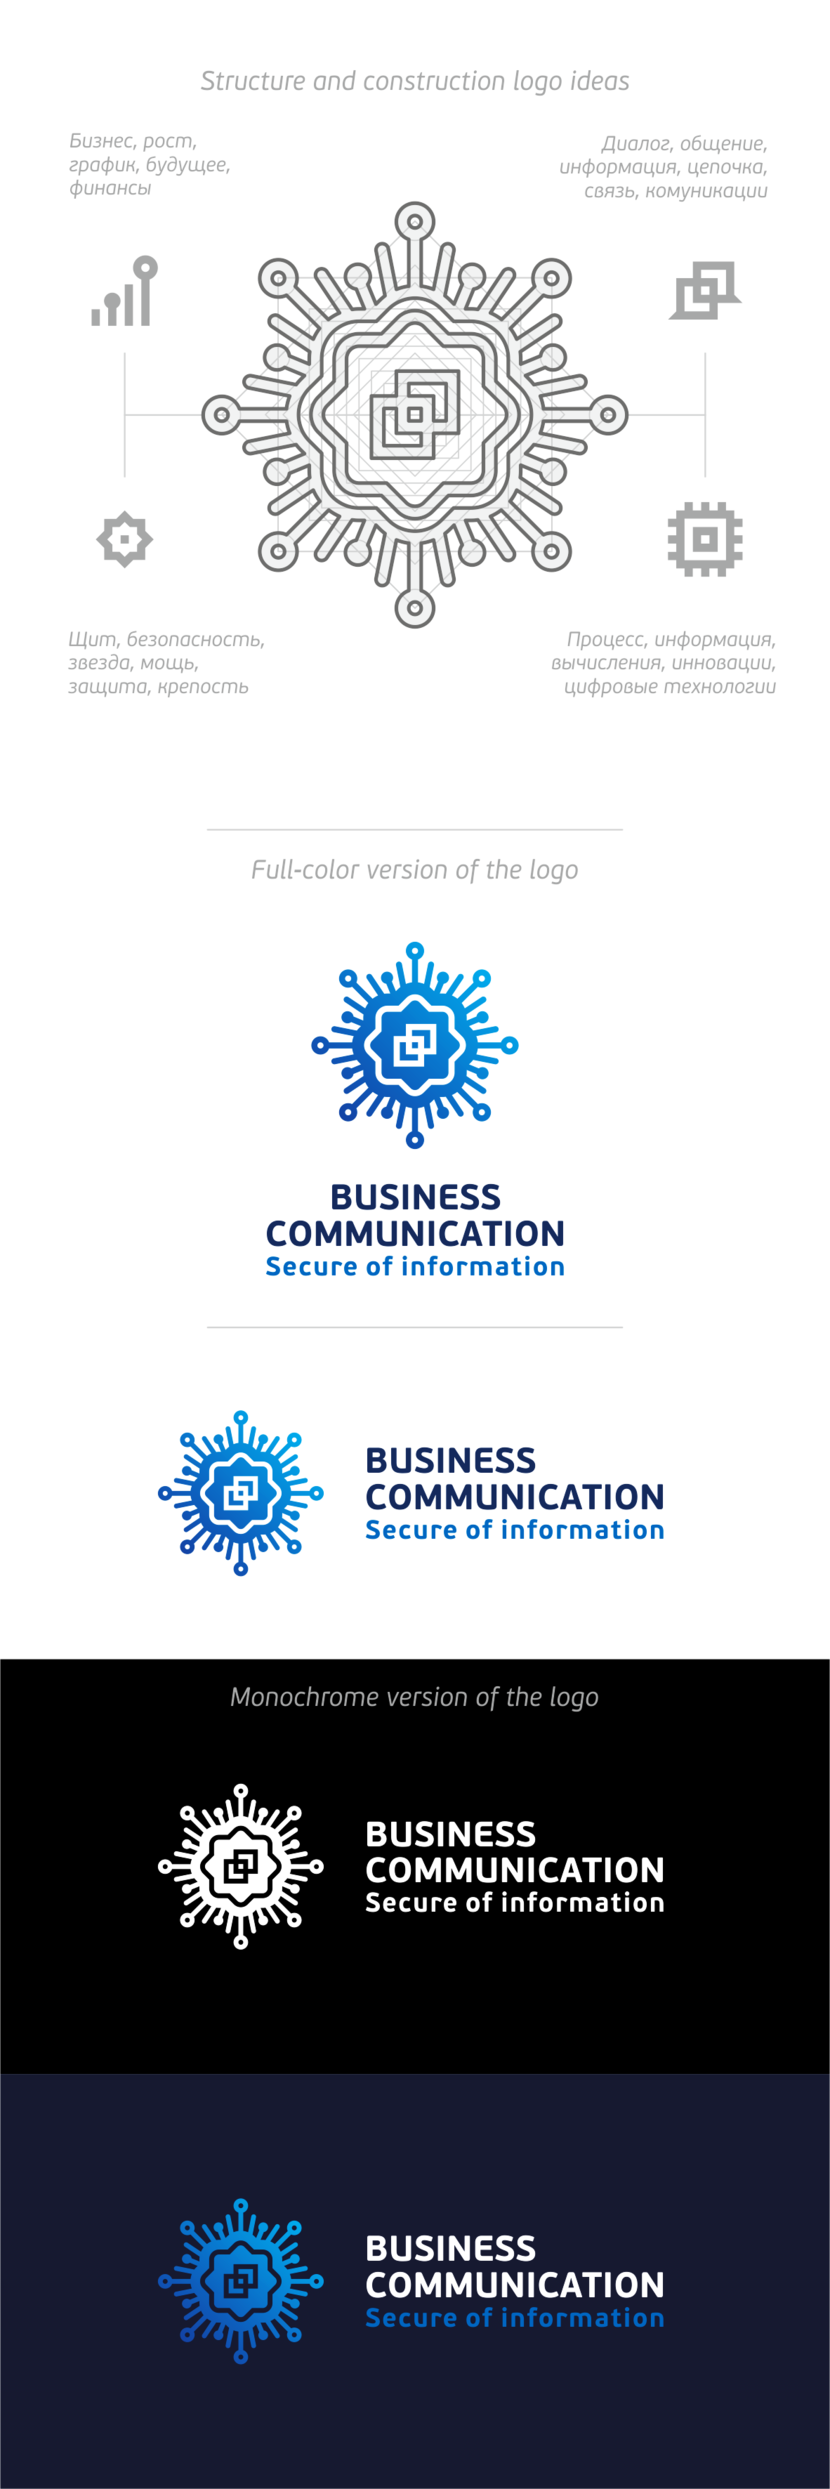 + выполнимо) - Разработать фирменный логотип Бизнес Коммуникации